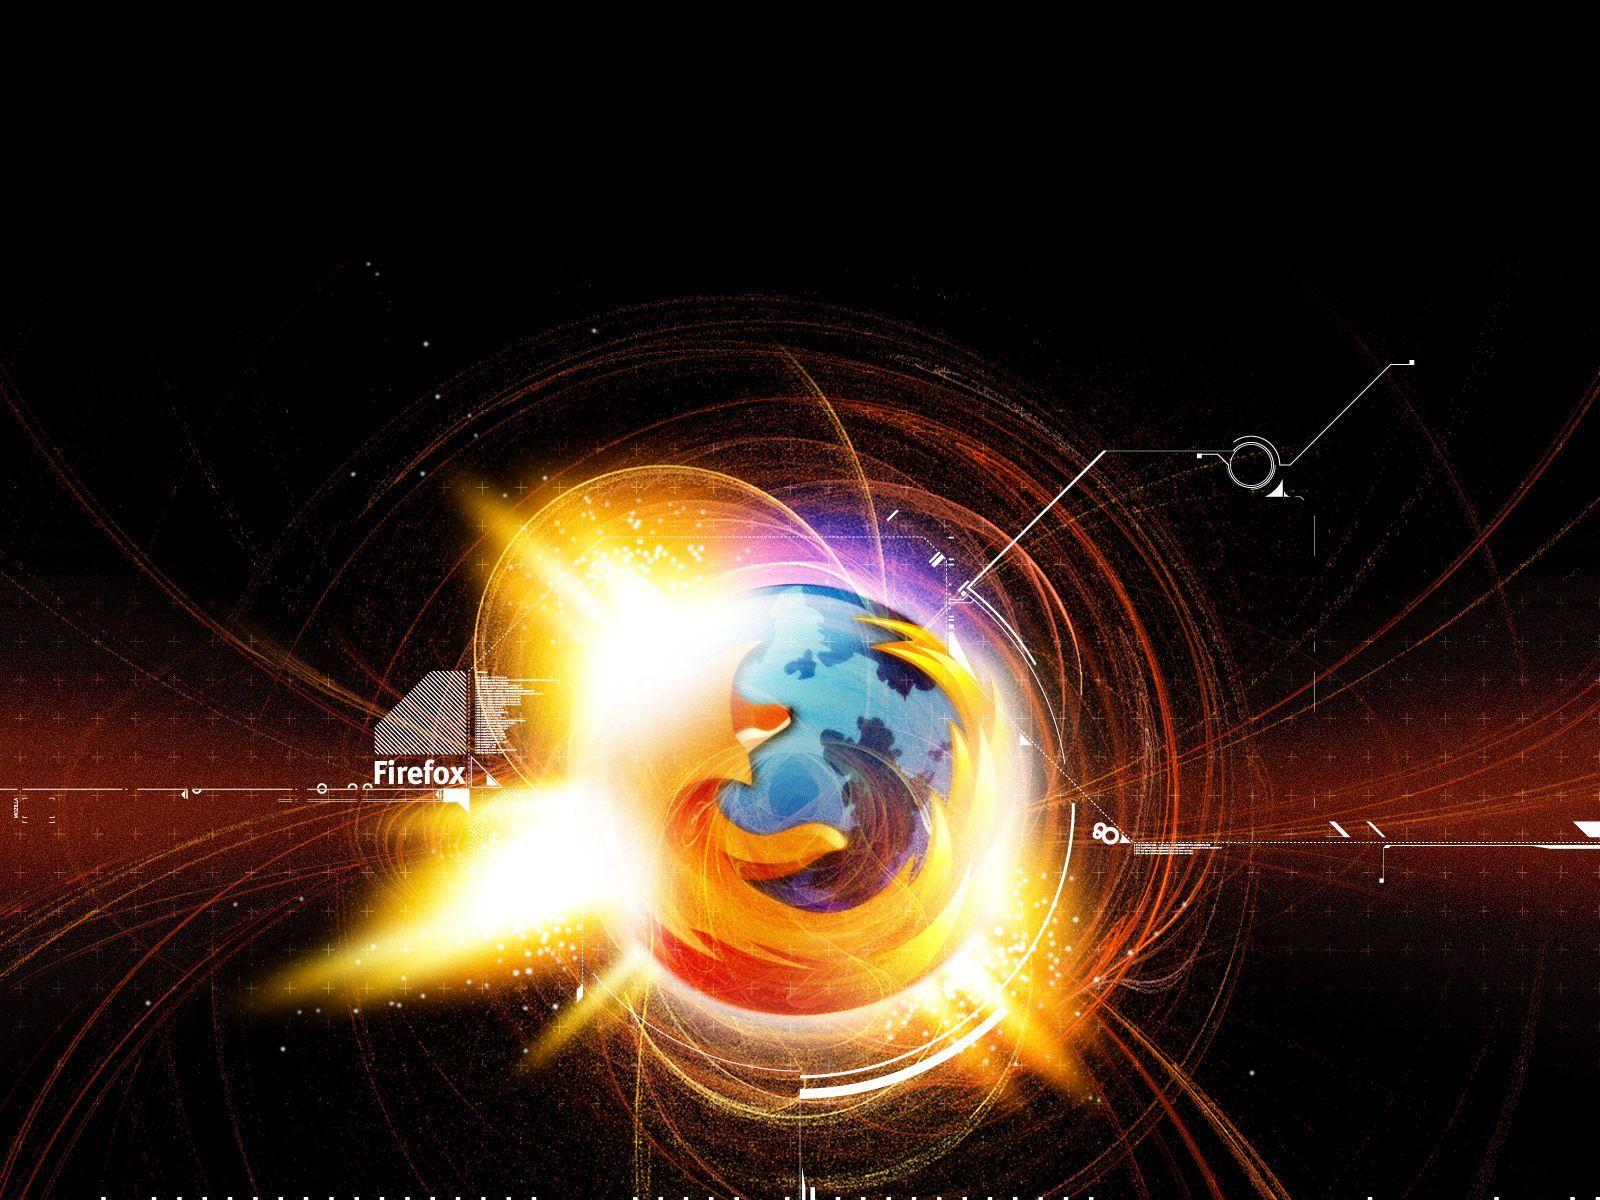 Galaxy Mozilla Firefox Image Background Wallpaper